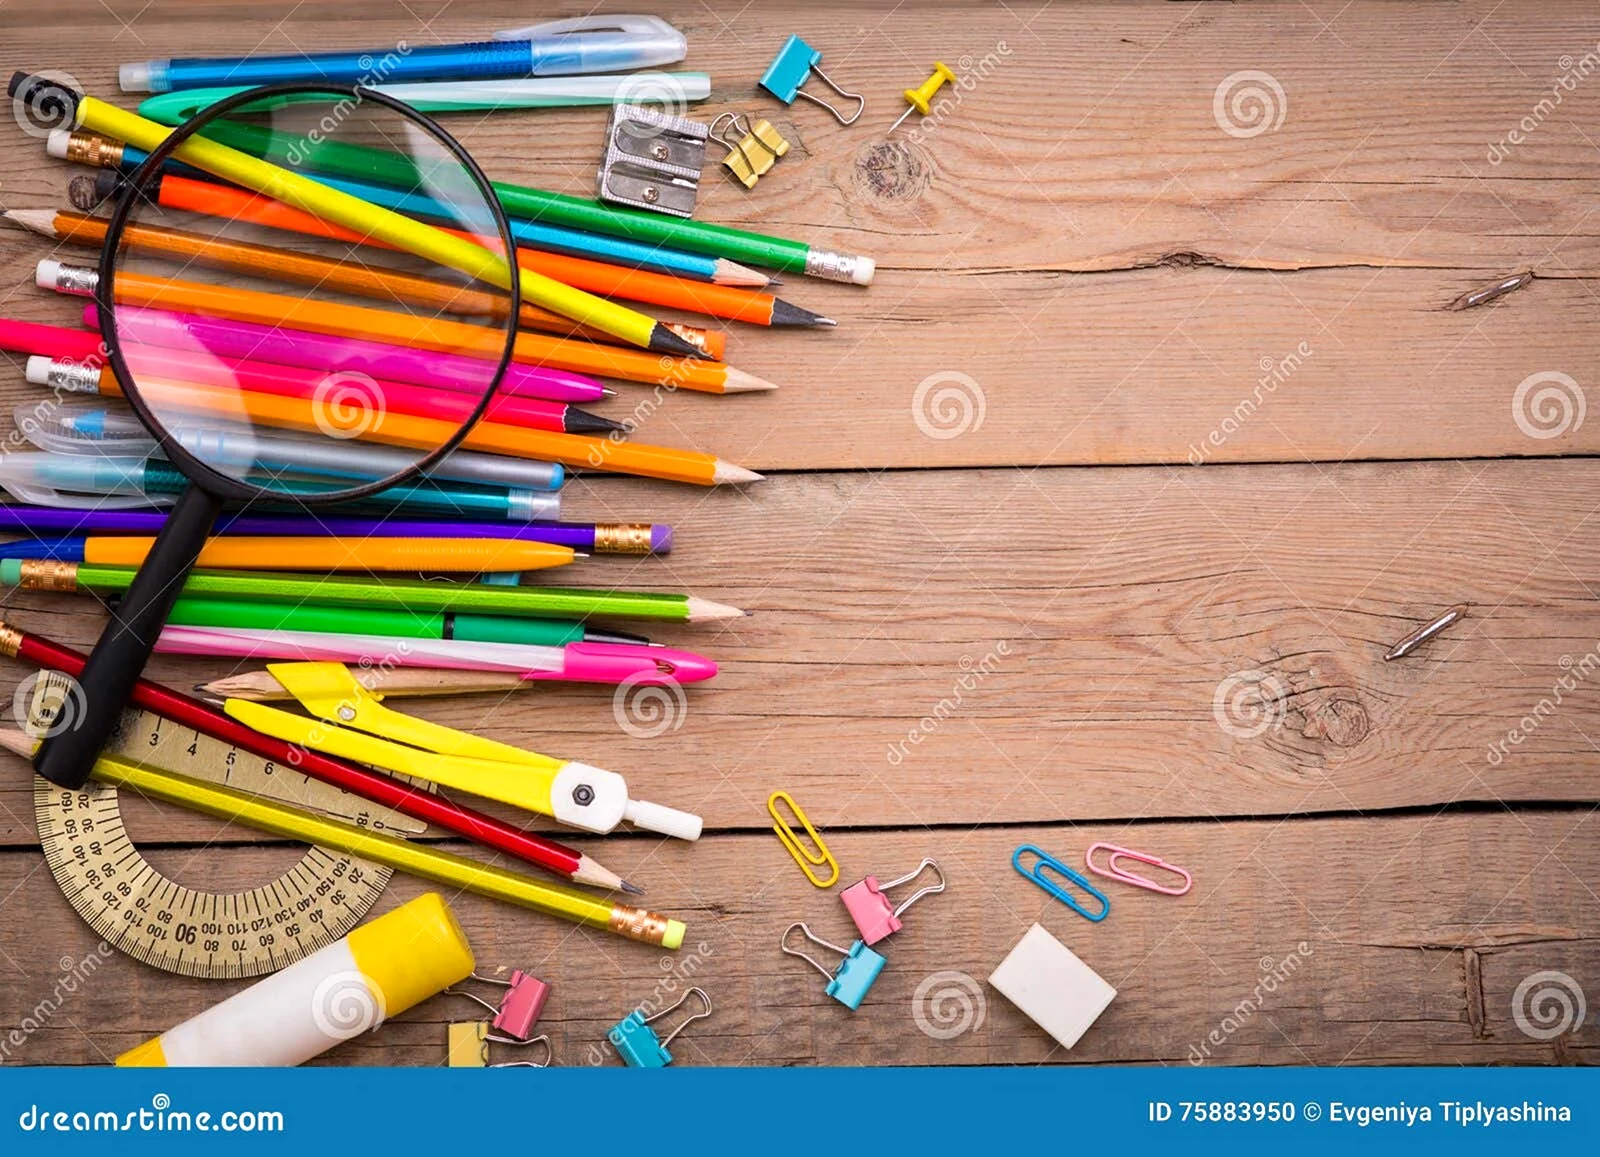 Разбросанные карандаши и ручки